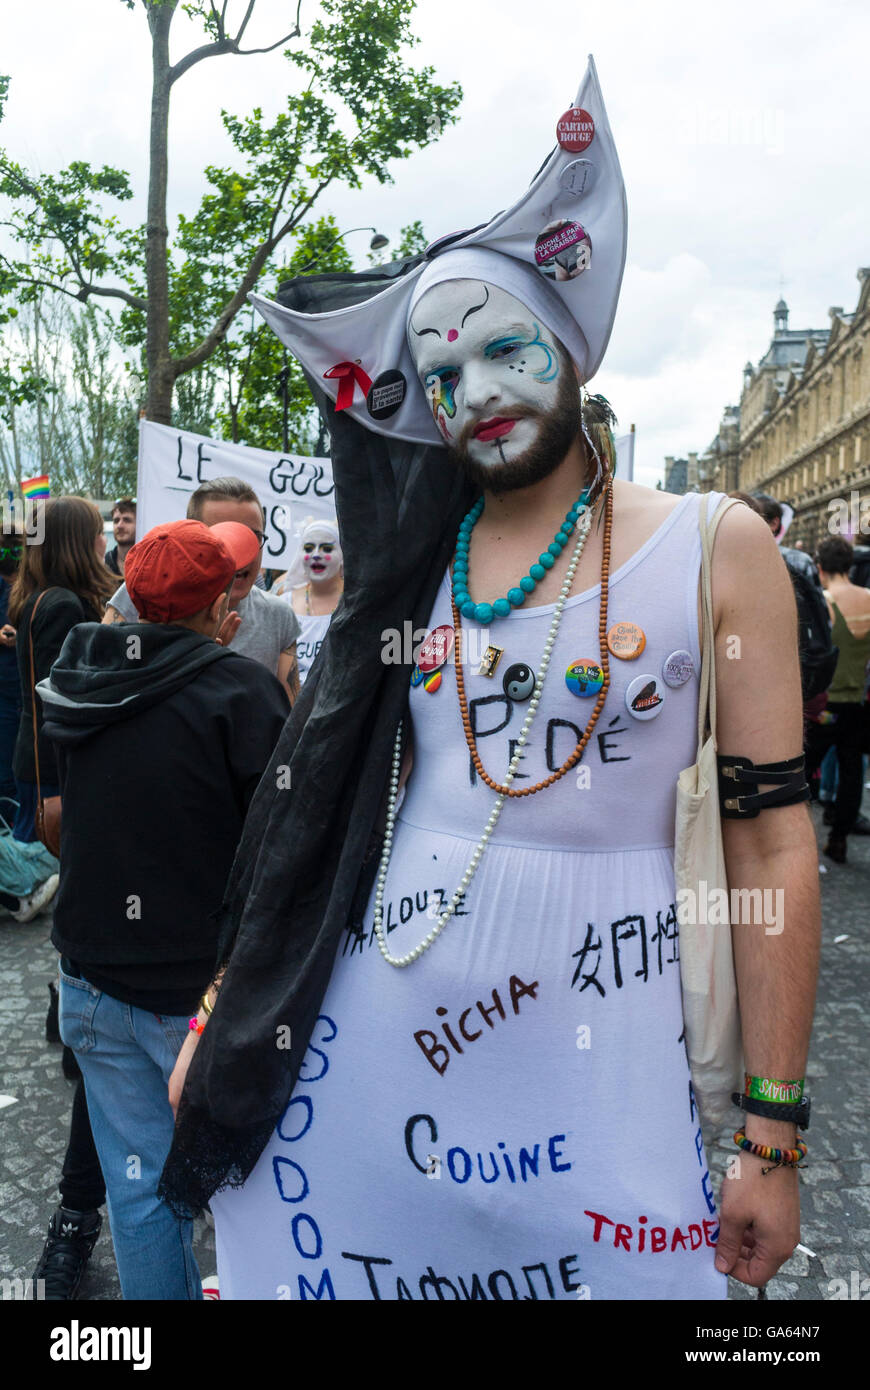 Paris, Frankreich, French Gay Pride, LGBTQ Activism, Travestie, Nonne, Mann in Make-up, posiert mit homophoben Beleidigungen auf Kostümen, Protesten, Queer-Aktivismus, seltsame Menschen ungewöhnliche Demonstranten in frankreich Stockfoto